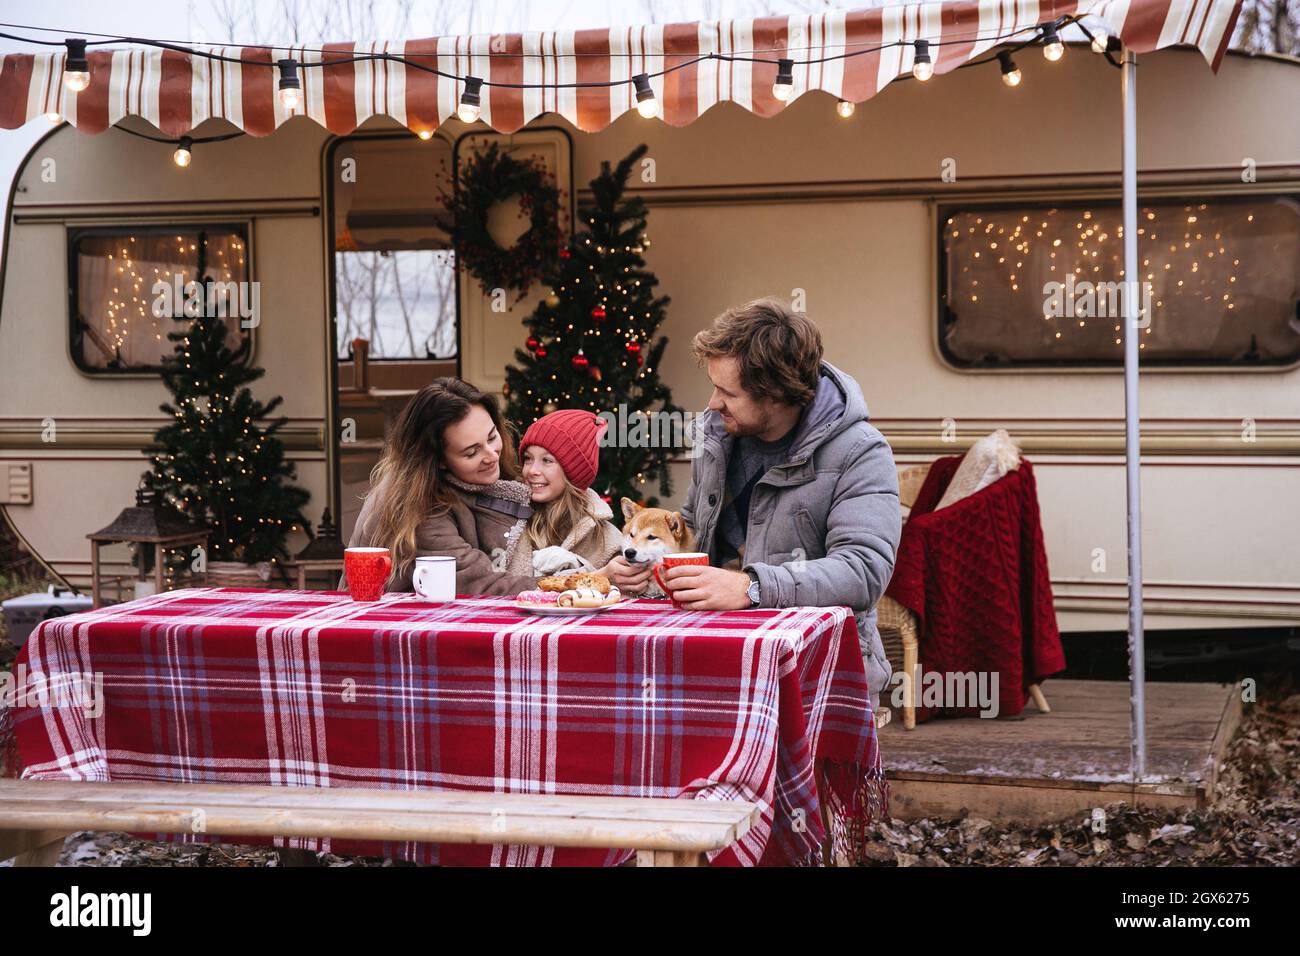 Avventura in famiglia a Natale: Mamma, papà, ragazzino e cane vivono in un rimorchio furgone per le vacanze invernali Foto Stock